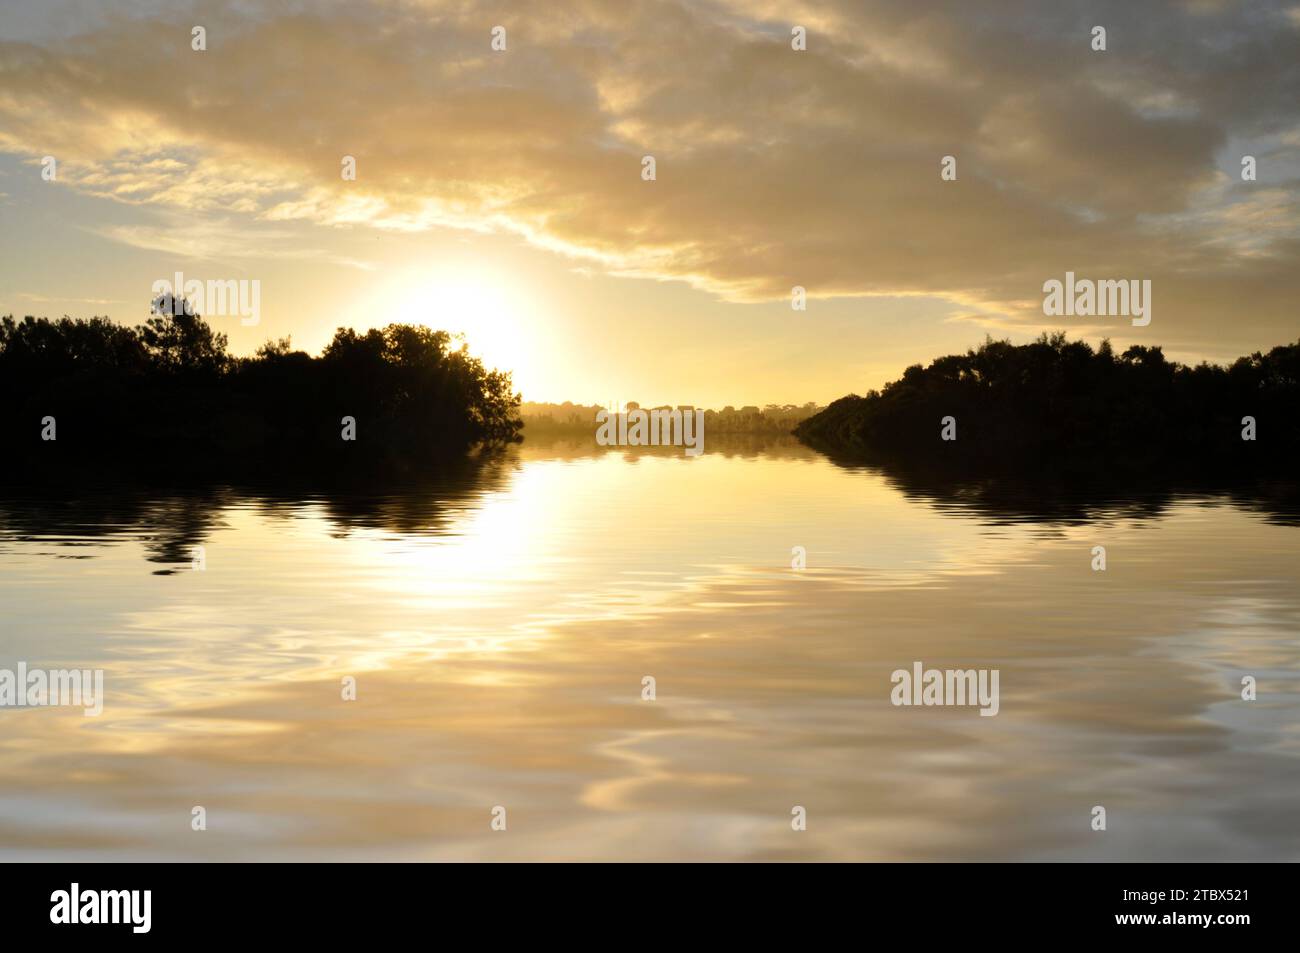 Reflets du ciel sur le lac au coucher du soleil, Australie méridionale Banque D'Images